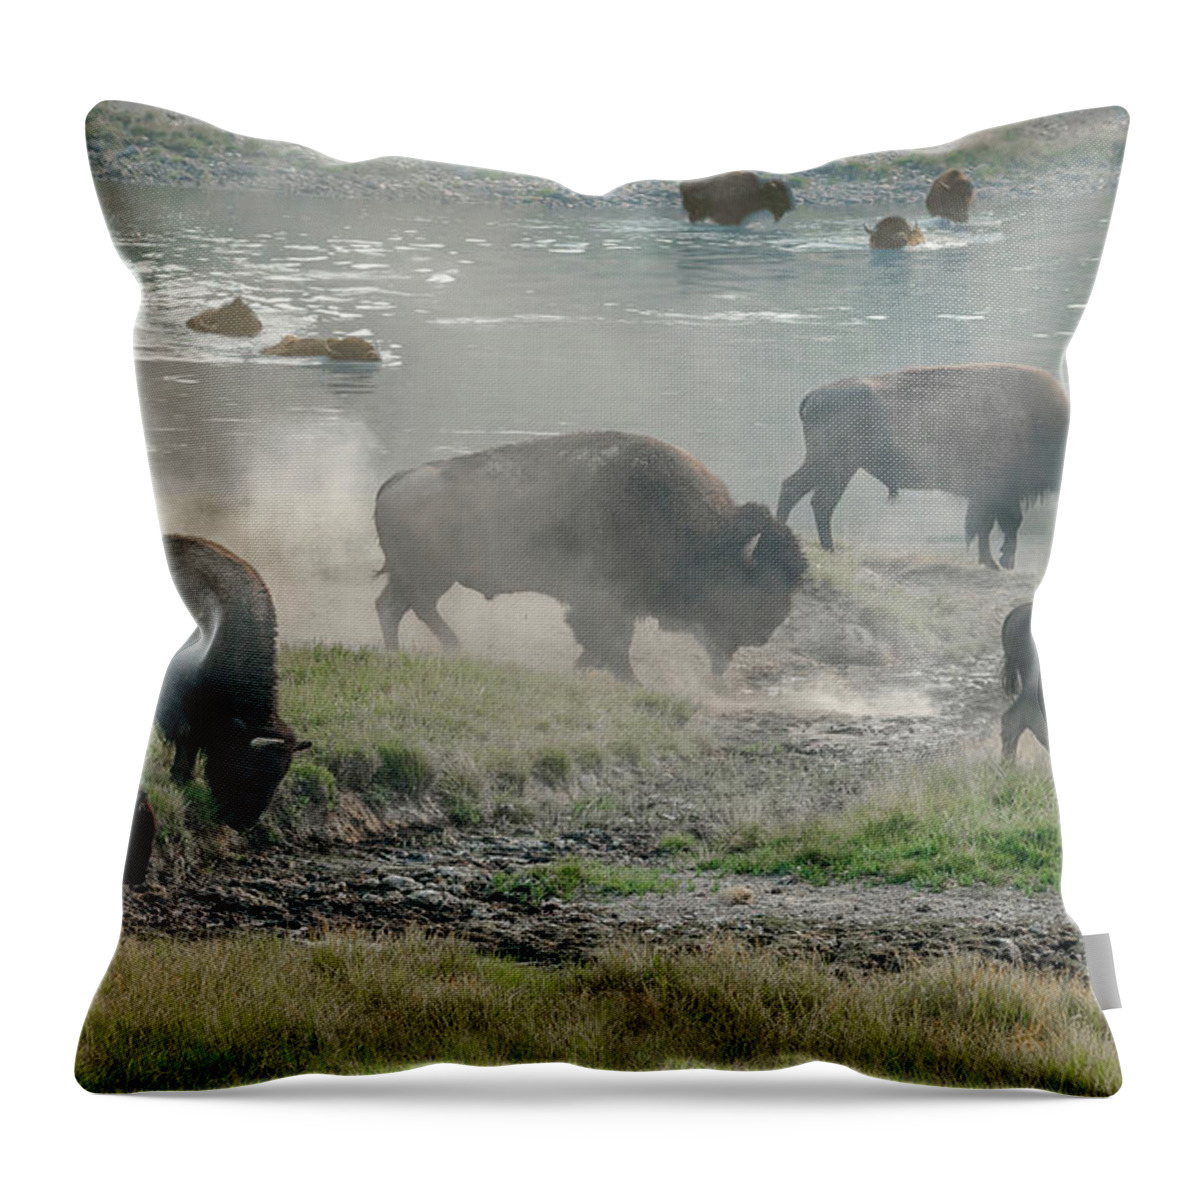 Buffalos Throw Pillow featuring the photograph American Buffalo by Jaime Mercado